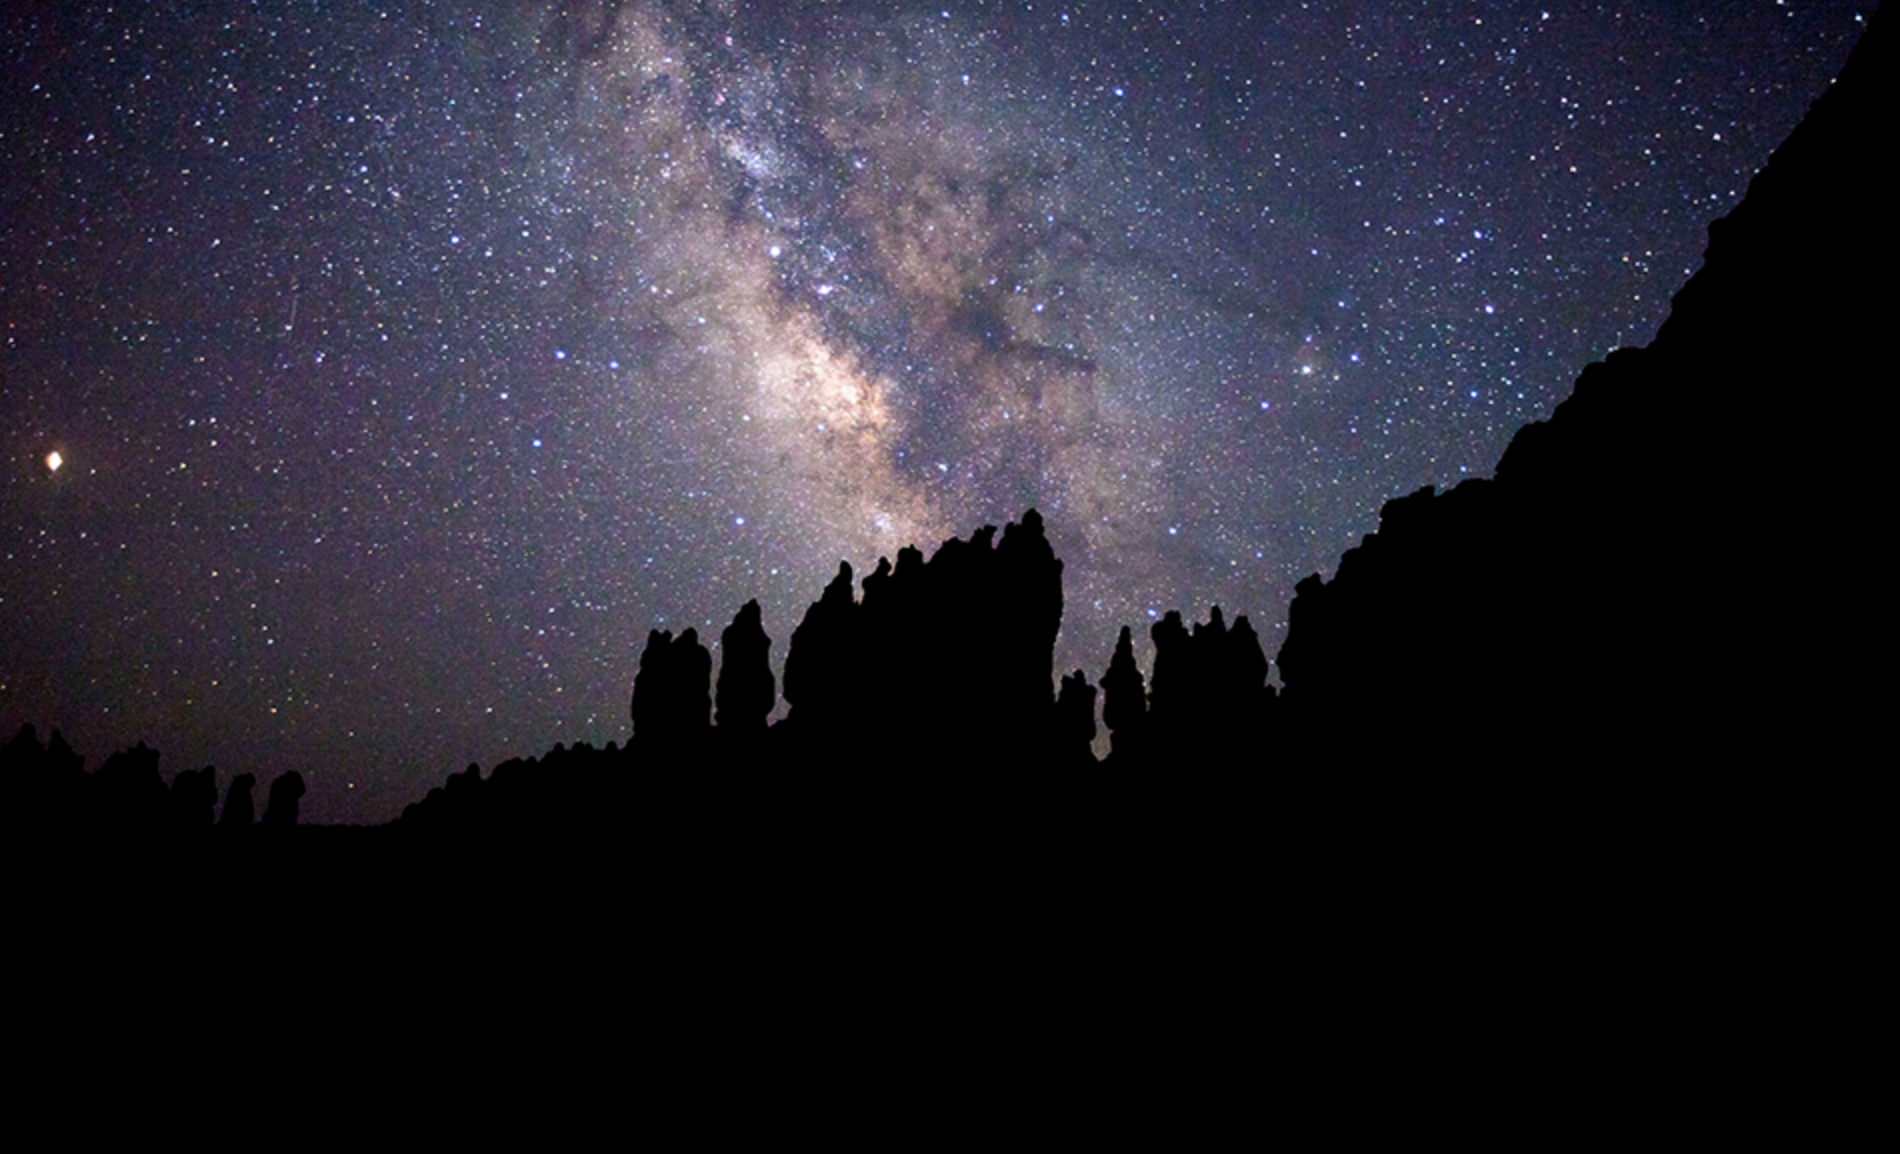 Bryce Canyon at night.